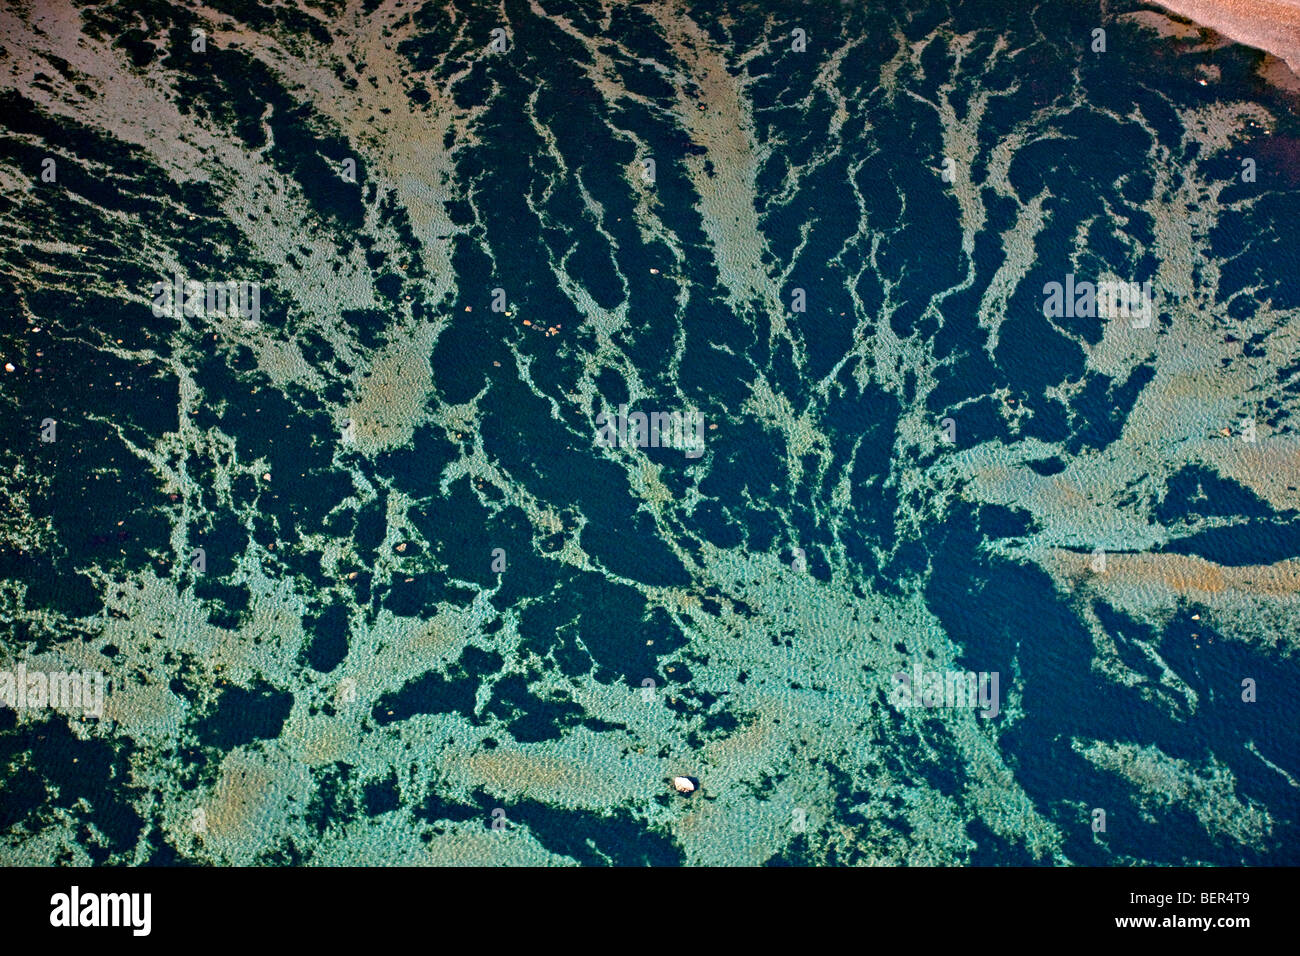 Vue aérienne de motifs abstraits dans l'océan Pacifique au large de l'île Malcolm dans le détroit Broughton, British Columbia, Canada. Banque D'Images